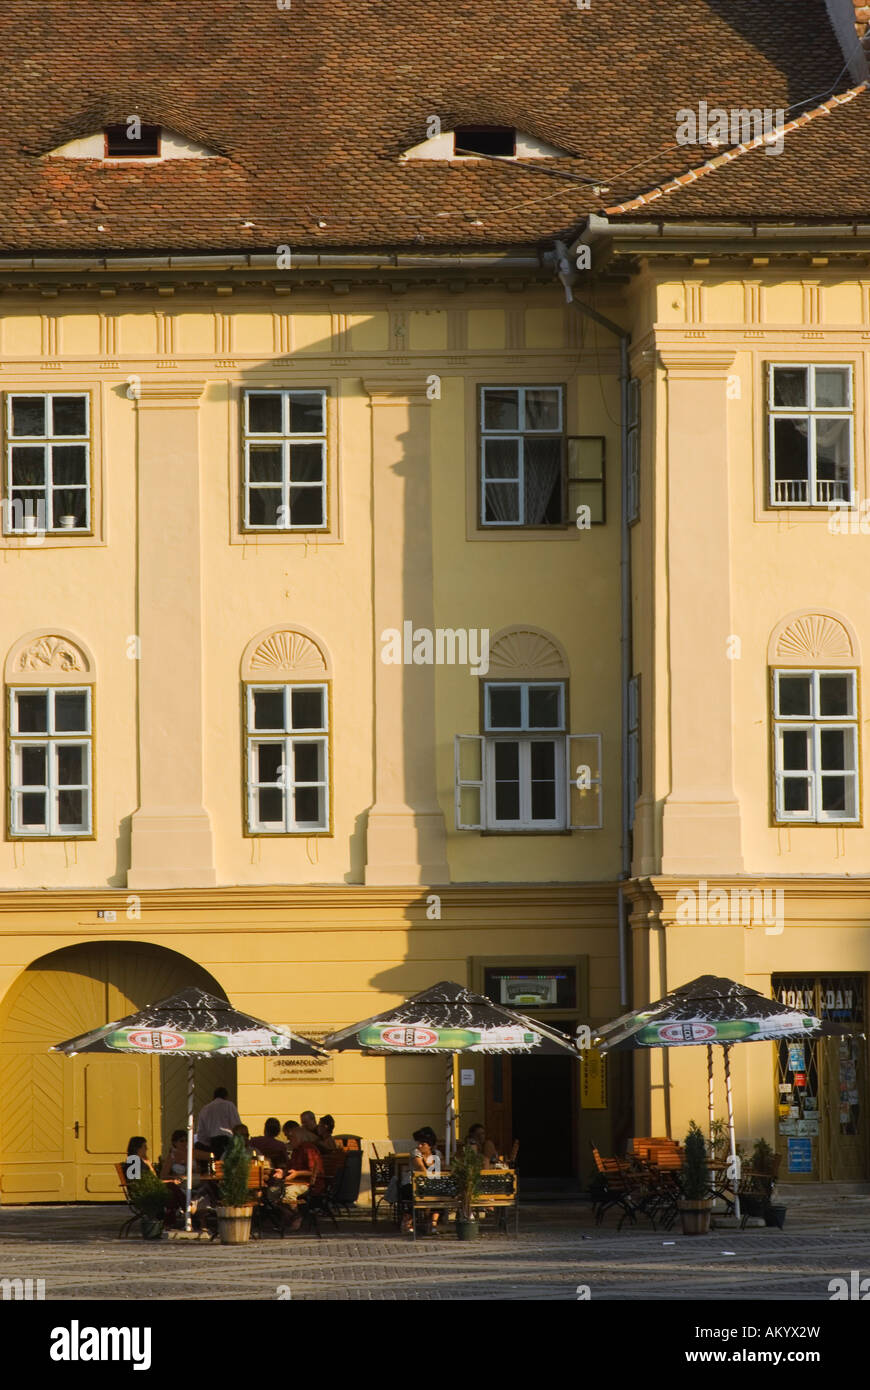 Cafe and buildings, Piata Mare, Sibiu, Romania Stock Photo